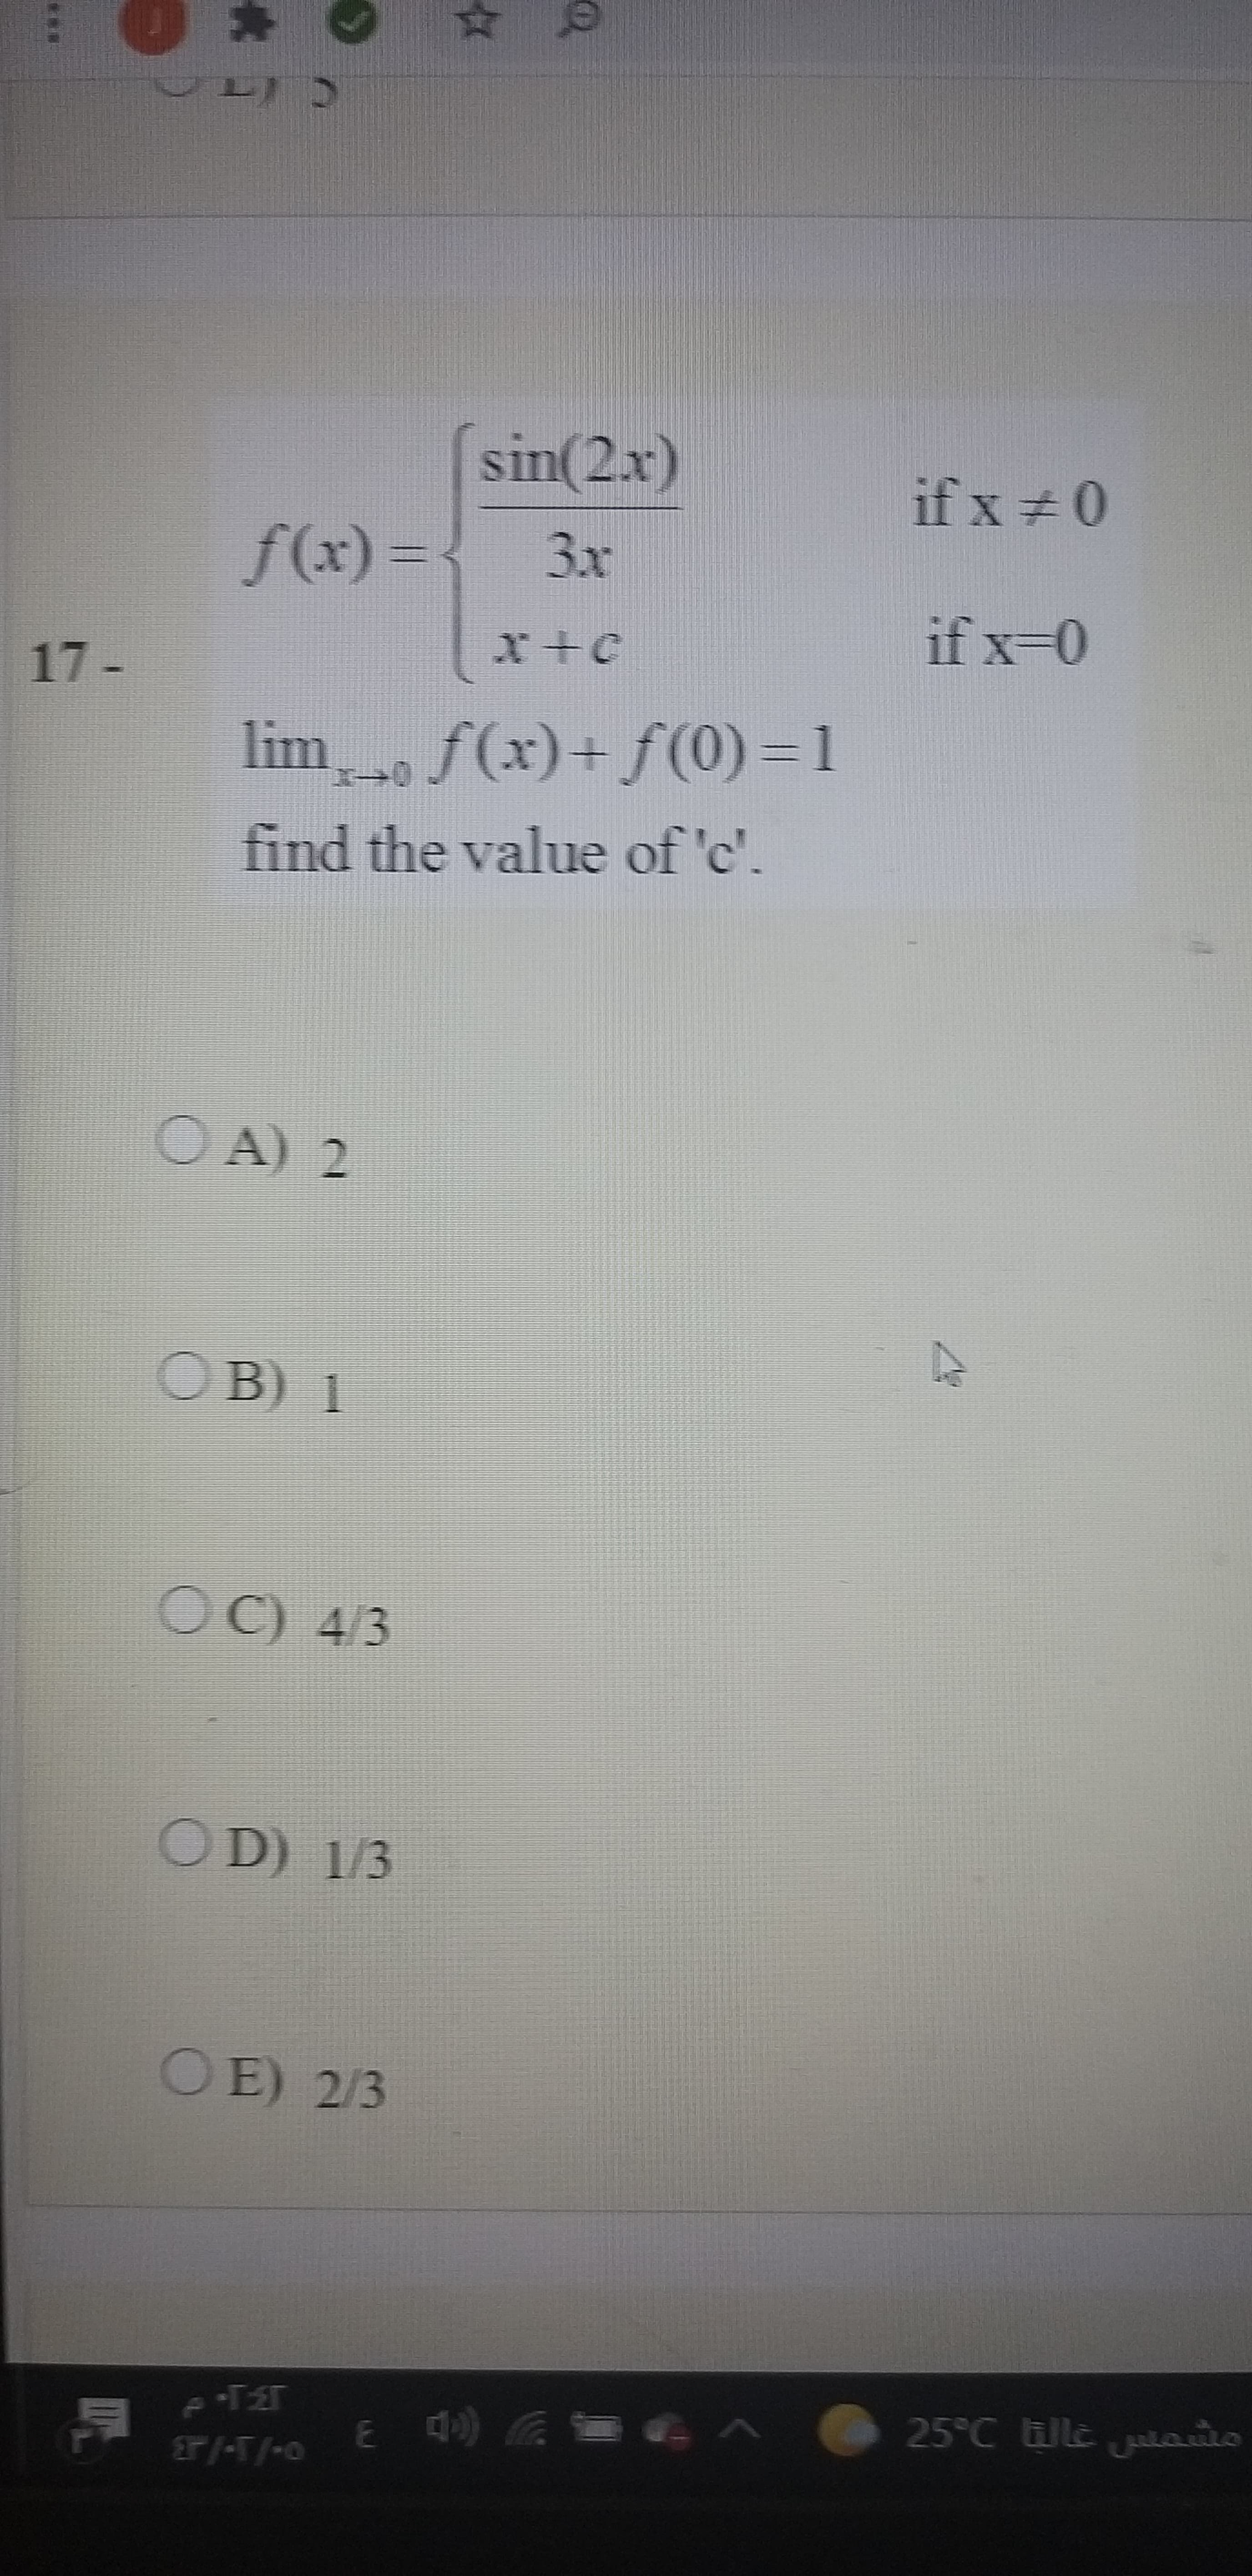 sin(2x)
if x +0
f(x)%3D{
3x
if x-0
17 -
lim f(x)+ f(0)=1
find the value of 'c'.
